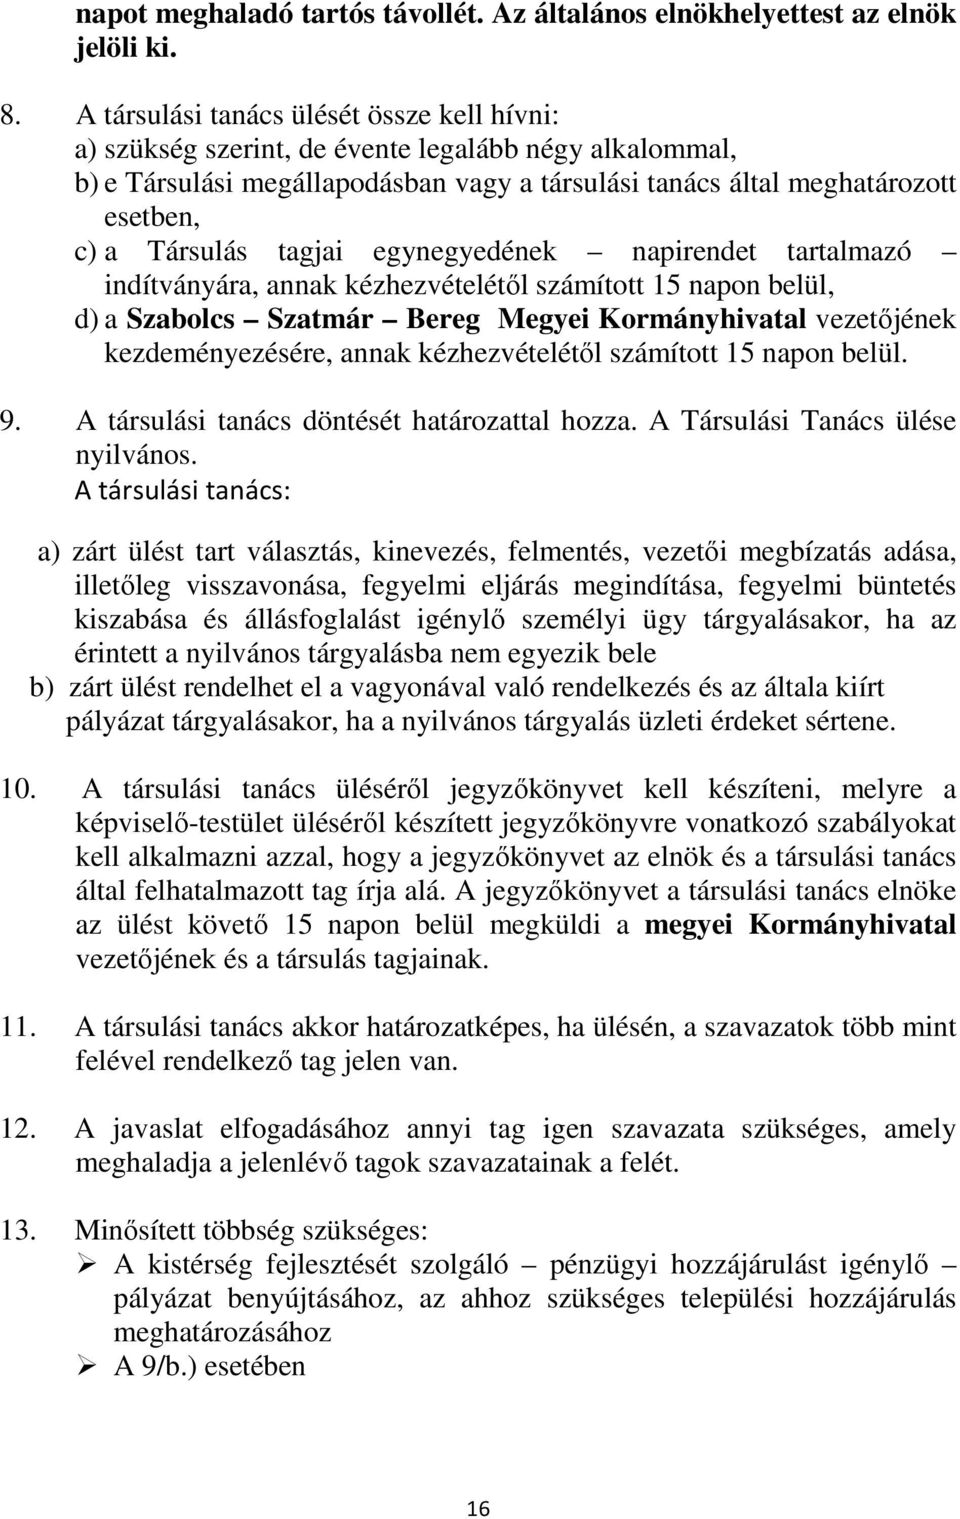 tagjai egynegyedének napirendet tartalmazó indítványára, annak kézhezvételétől számított 15 napon belül, d) a Szabolcs Szatmár Bereg Megyei Kormányhivatal vezetőjének kezdeményezésére, annak